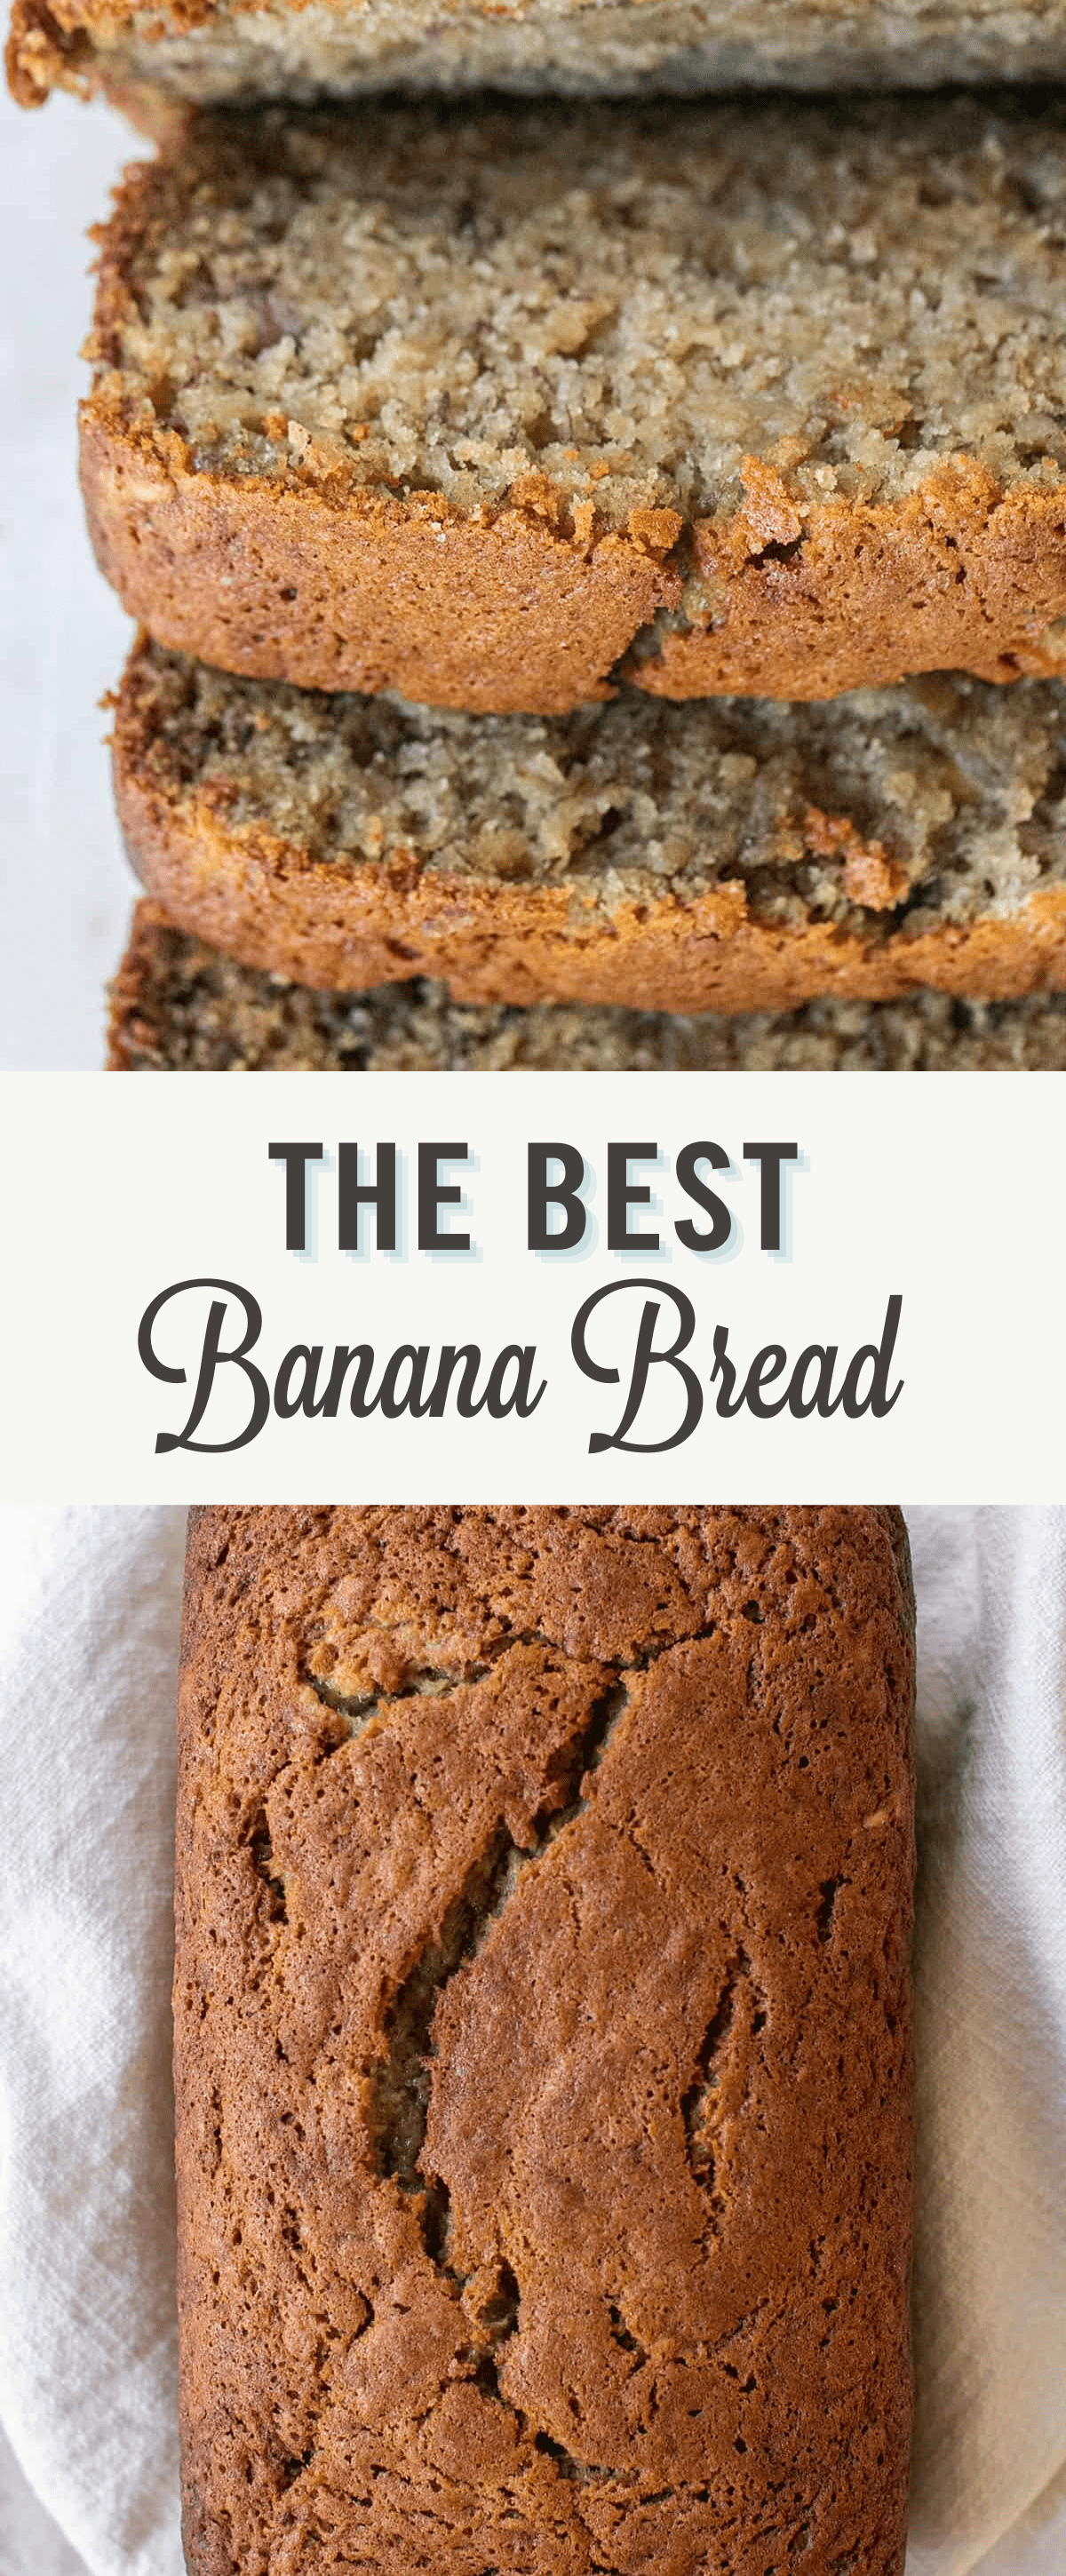 The best banana bread recipe.